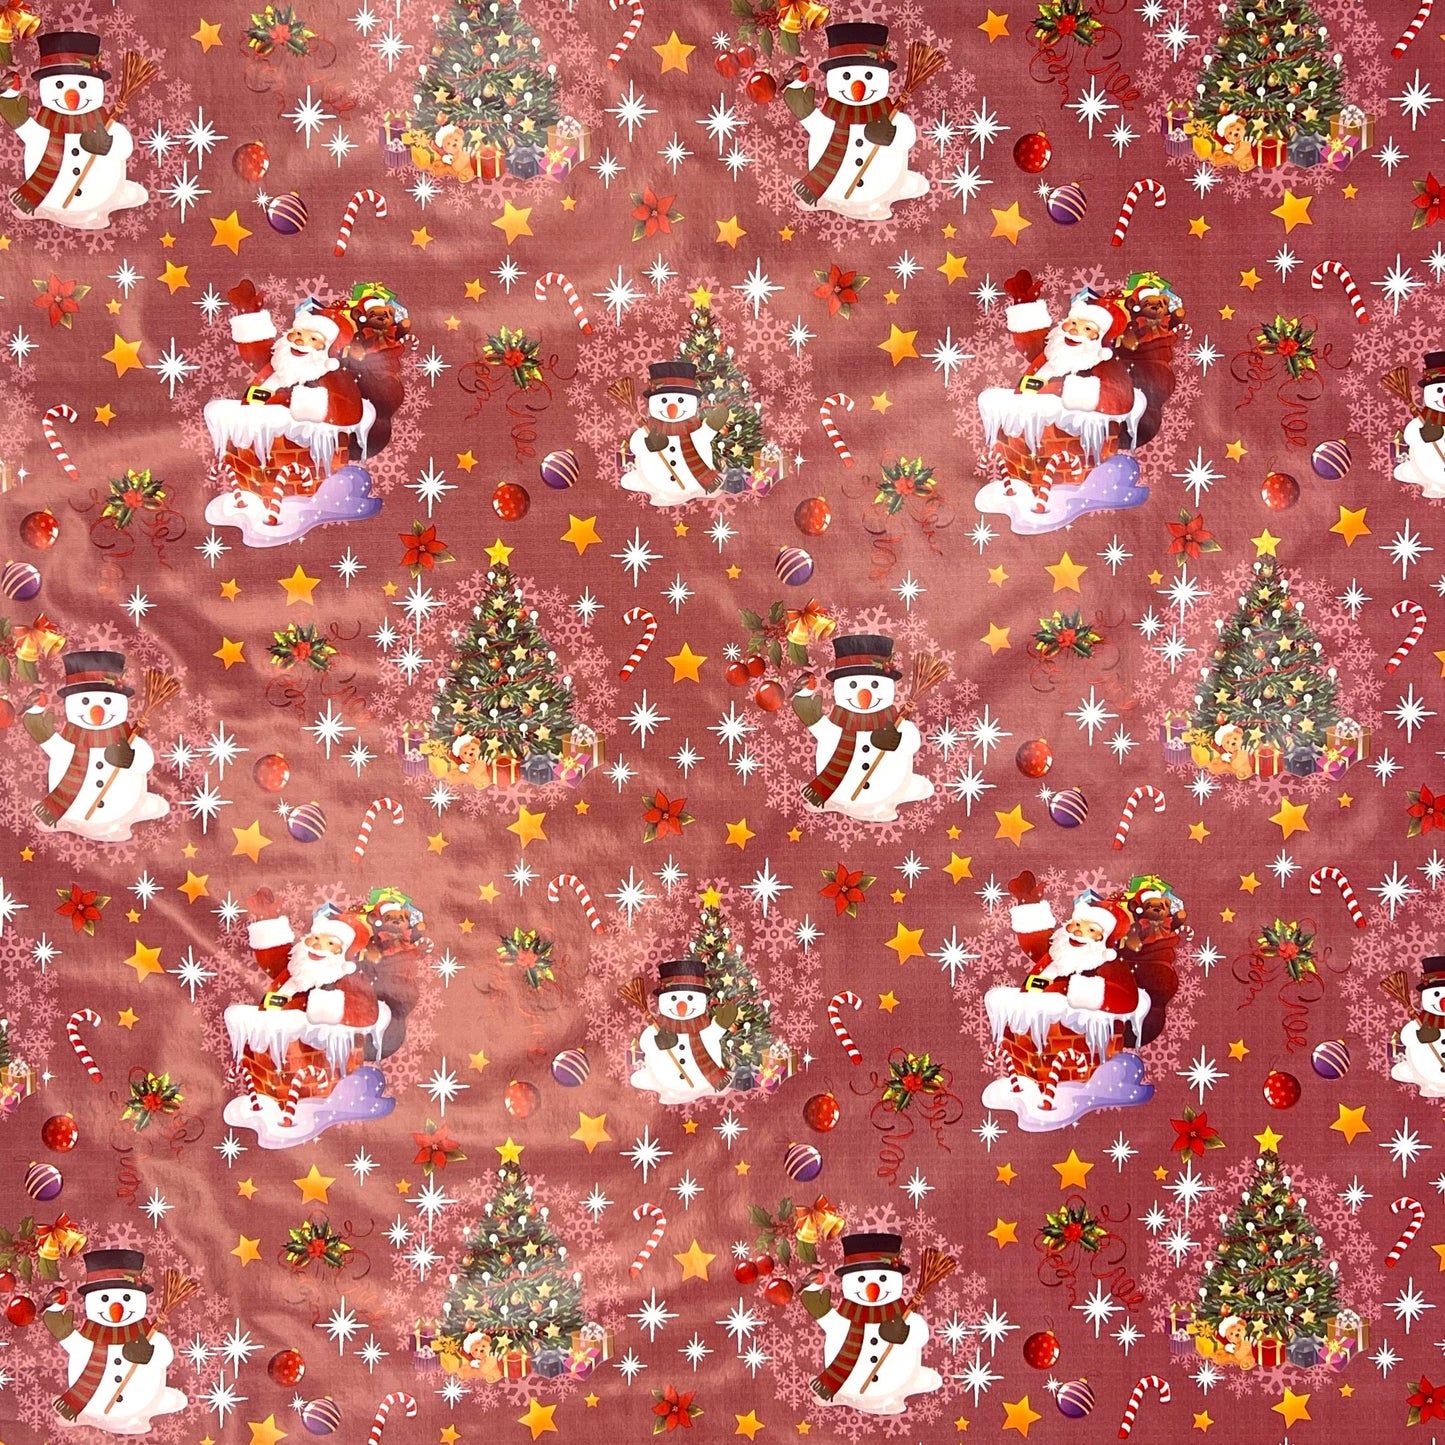 KEVKUS Wachstuch Tischdecke 01188-03 rot Weihnachten Weihnachtsmann wählbar in eckig, rund und oval -